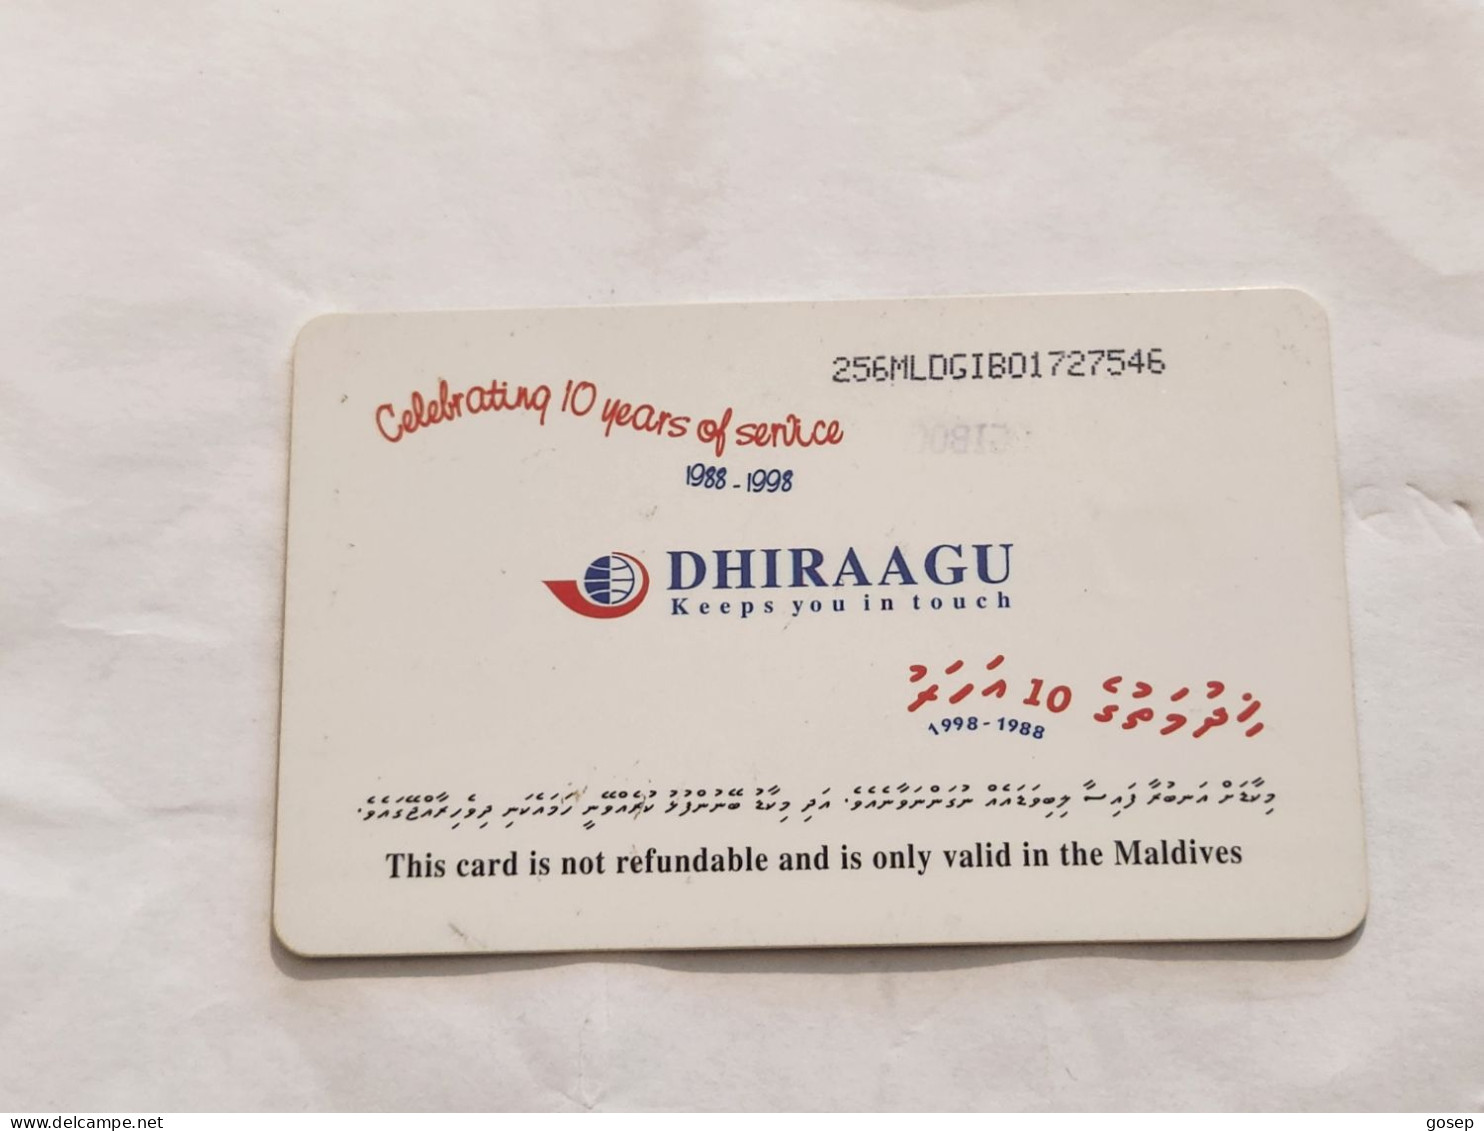 Maldives-(256MLDGIB-MAL-C-01)-save The Turtle-(44)-(RF30)-(256MLDGIB01727546)-used Card+1card Prepiad Free - Maldivas